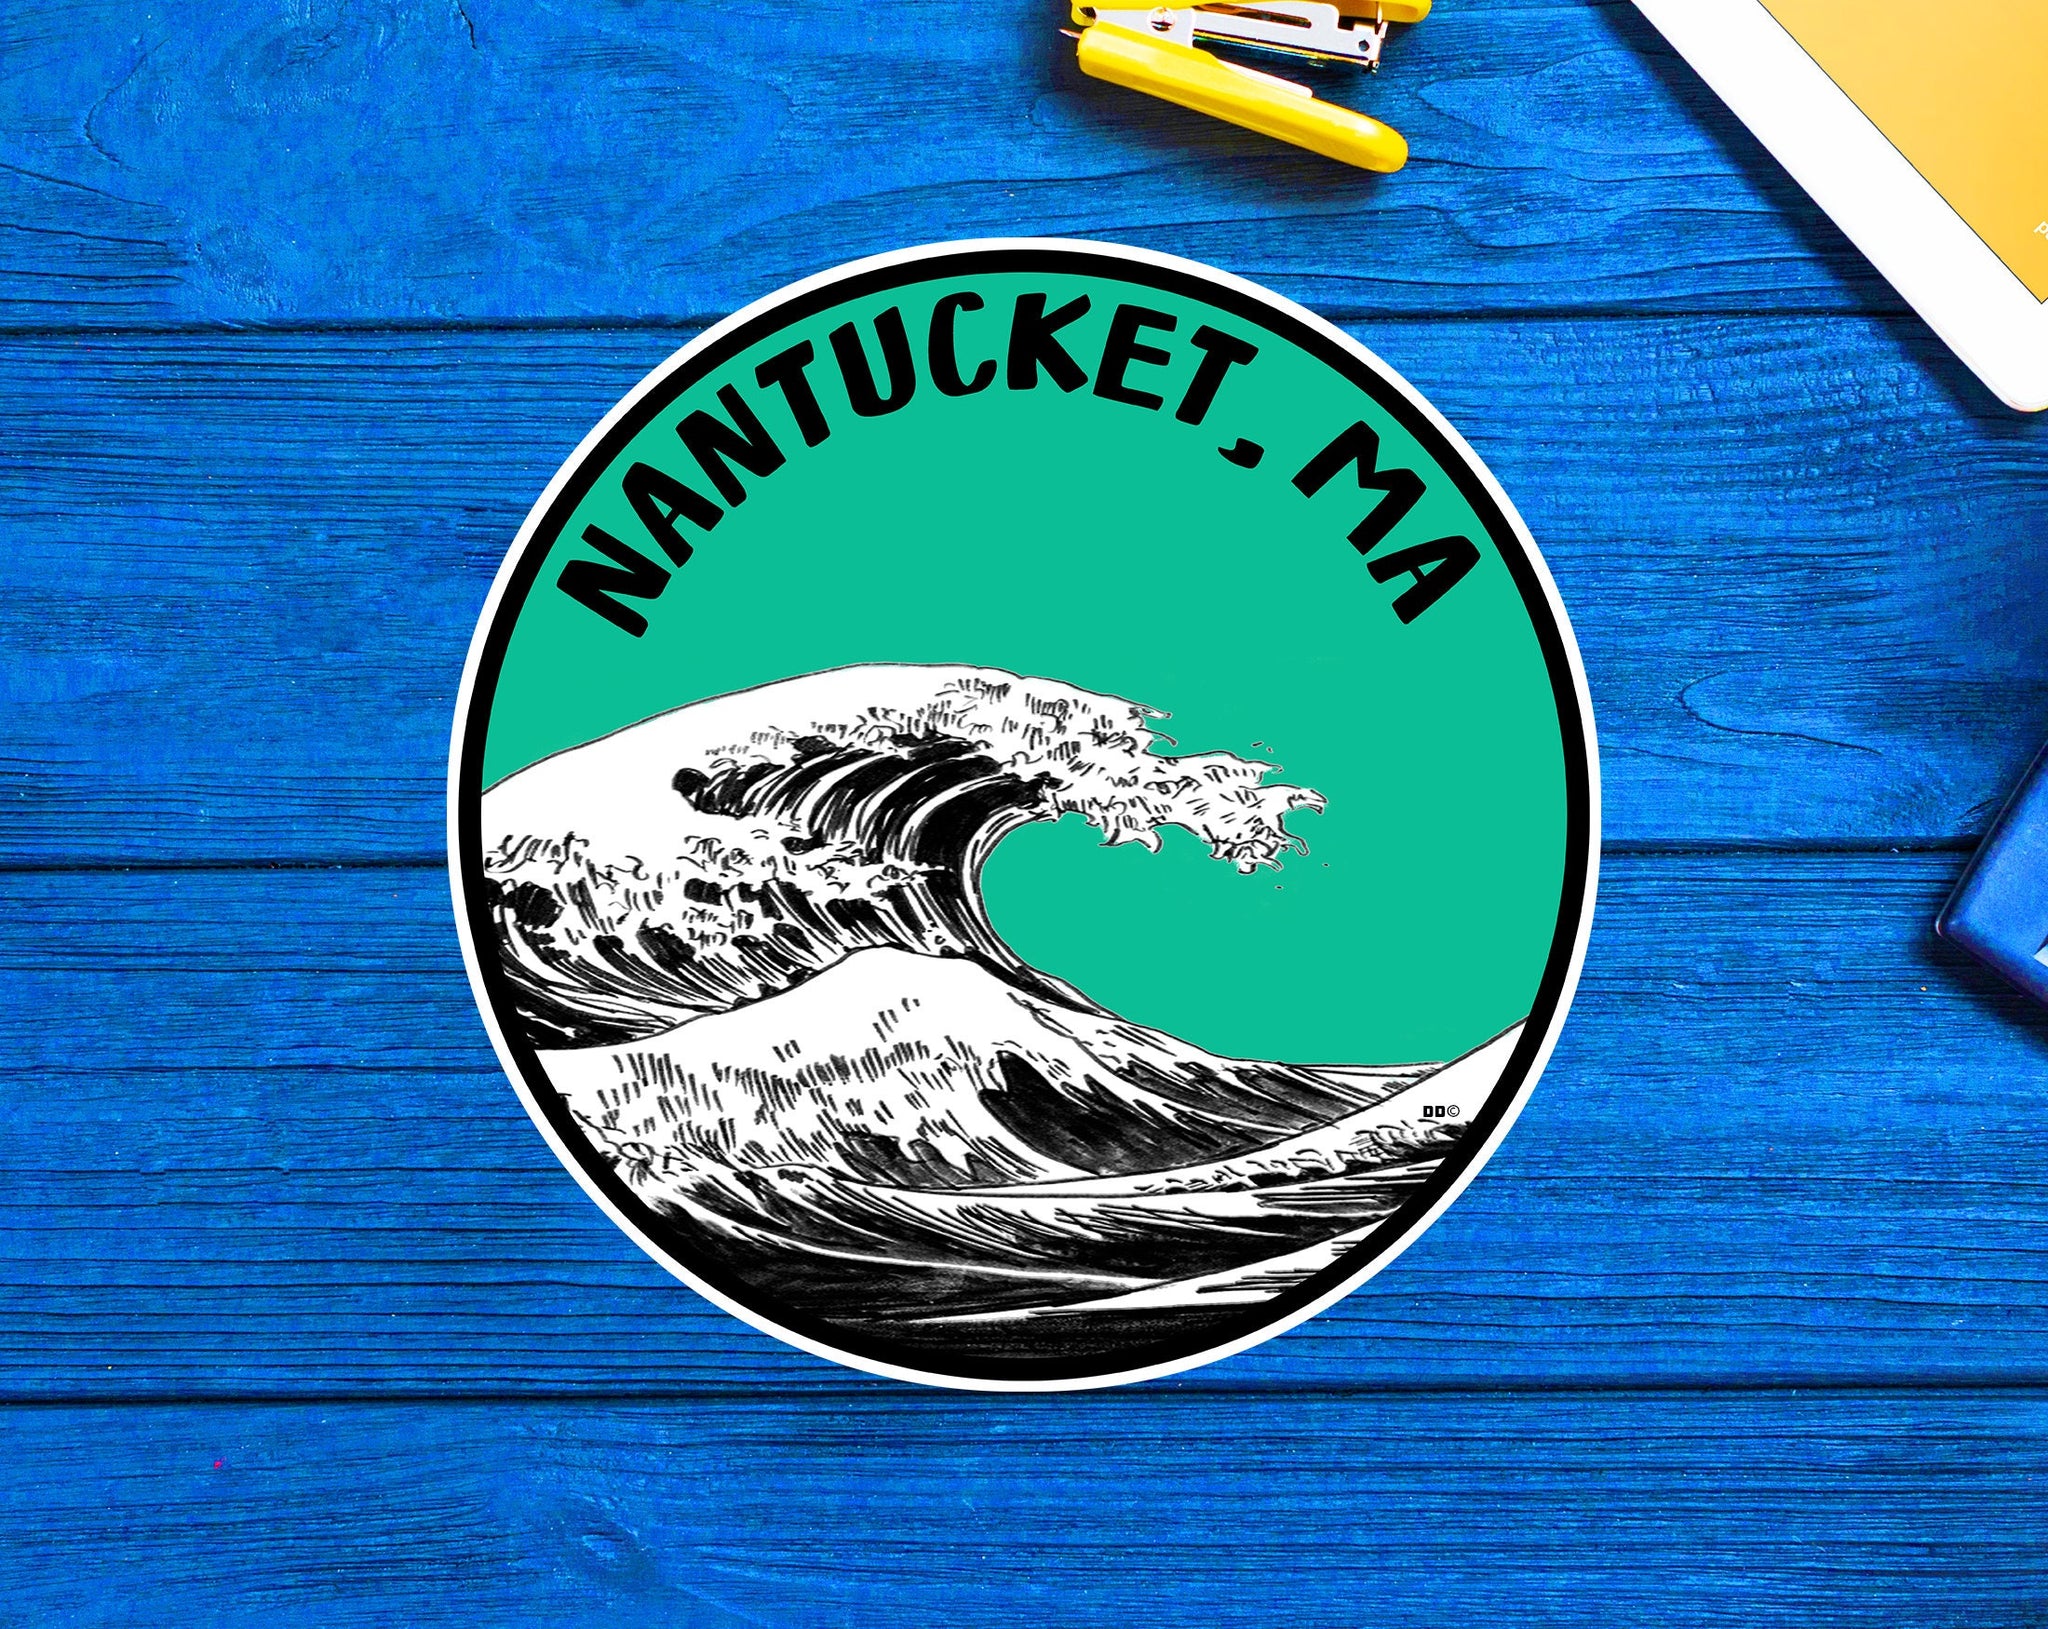 Nantucket Massachusetts Travel Sticker Decal 3"